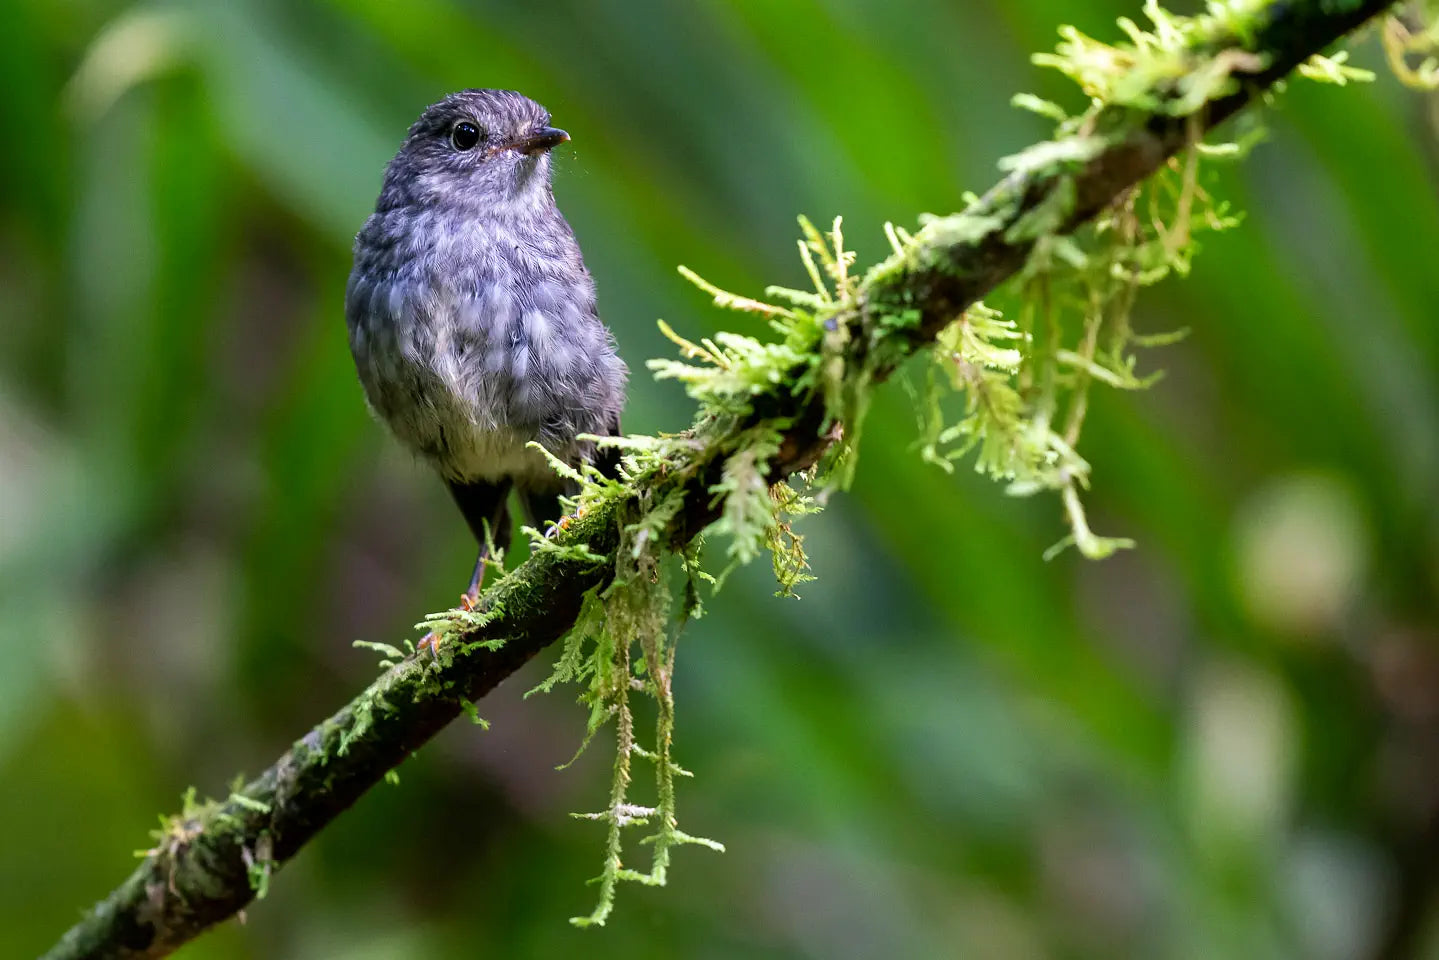 Toutouwai (New Zealand robin) on a lichened branch